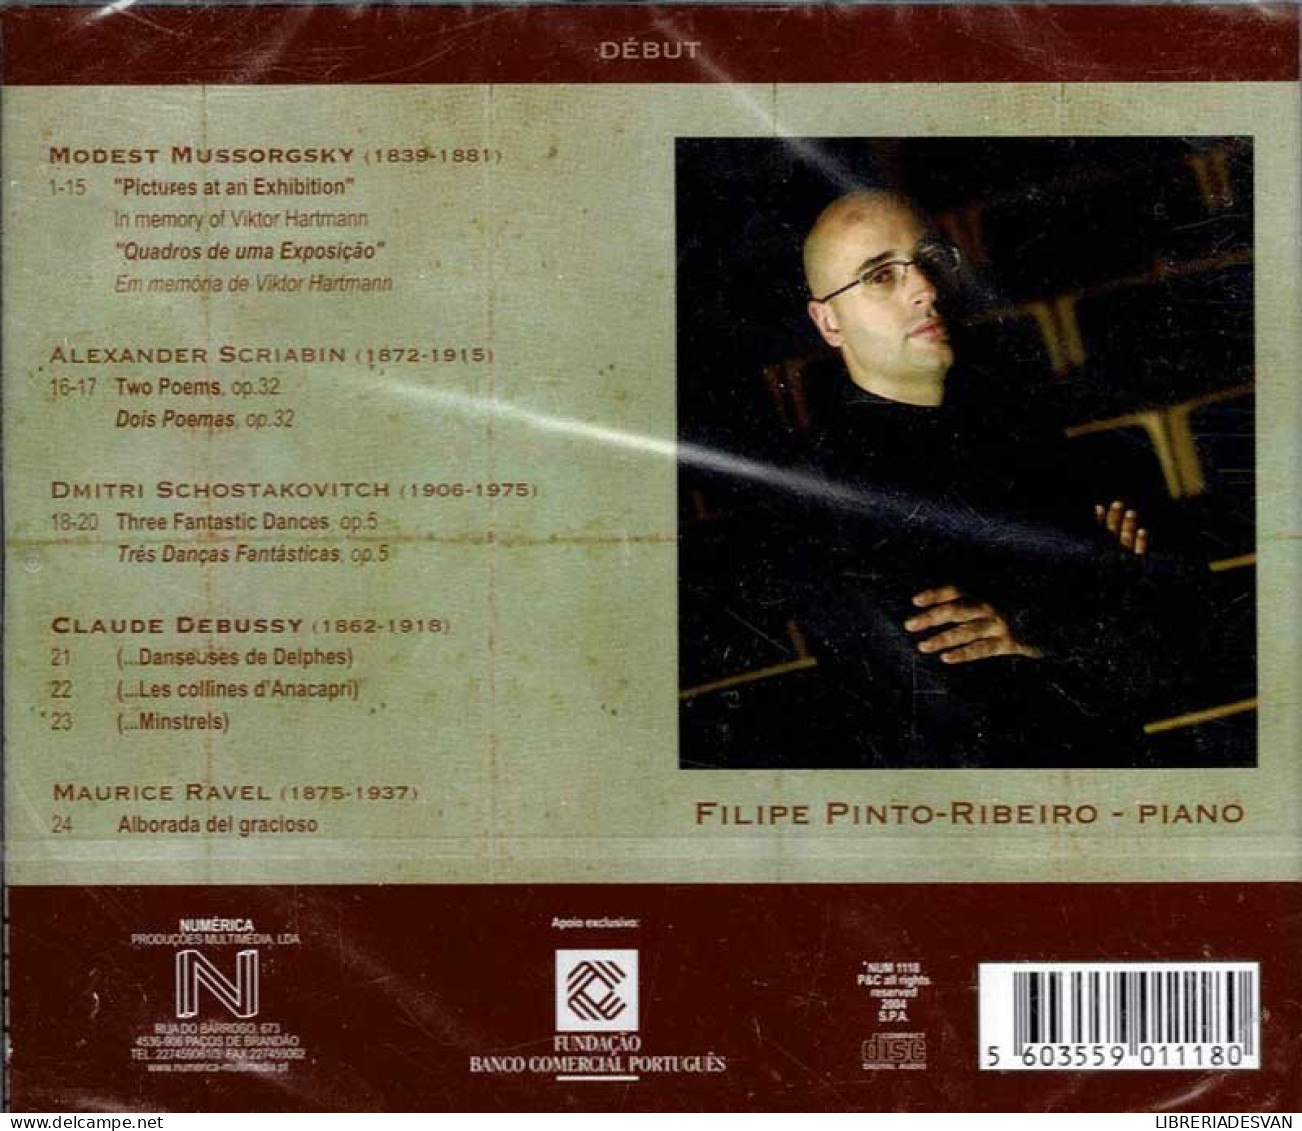 Filipe Pinto-Ribeiro - Début. CD - Classique